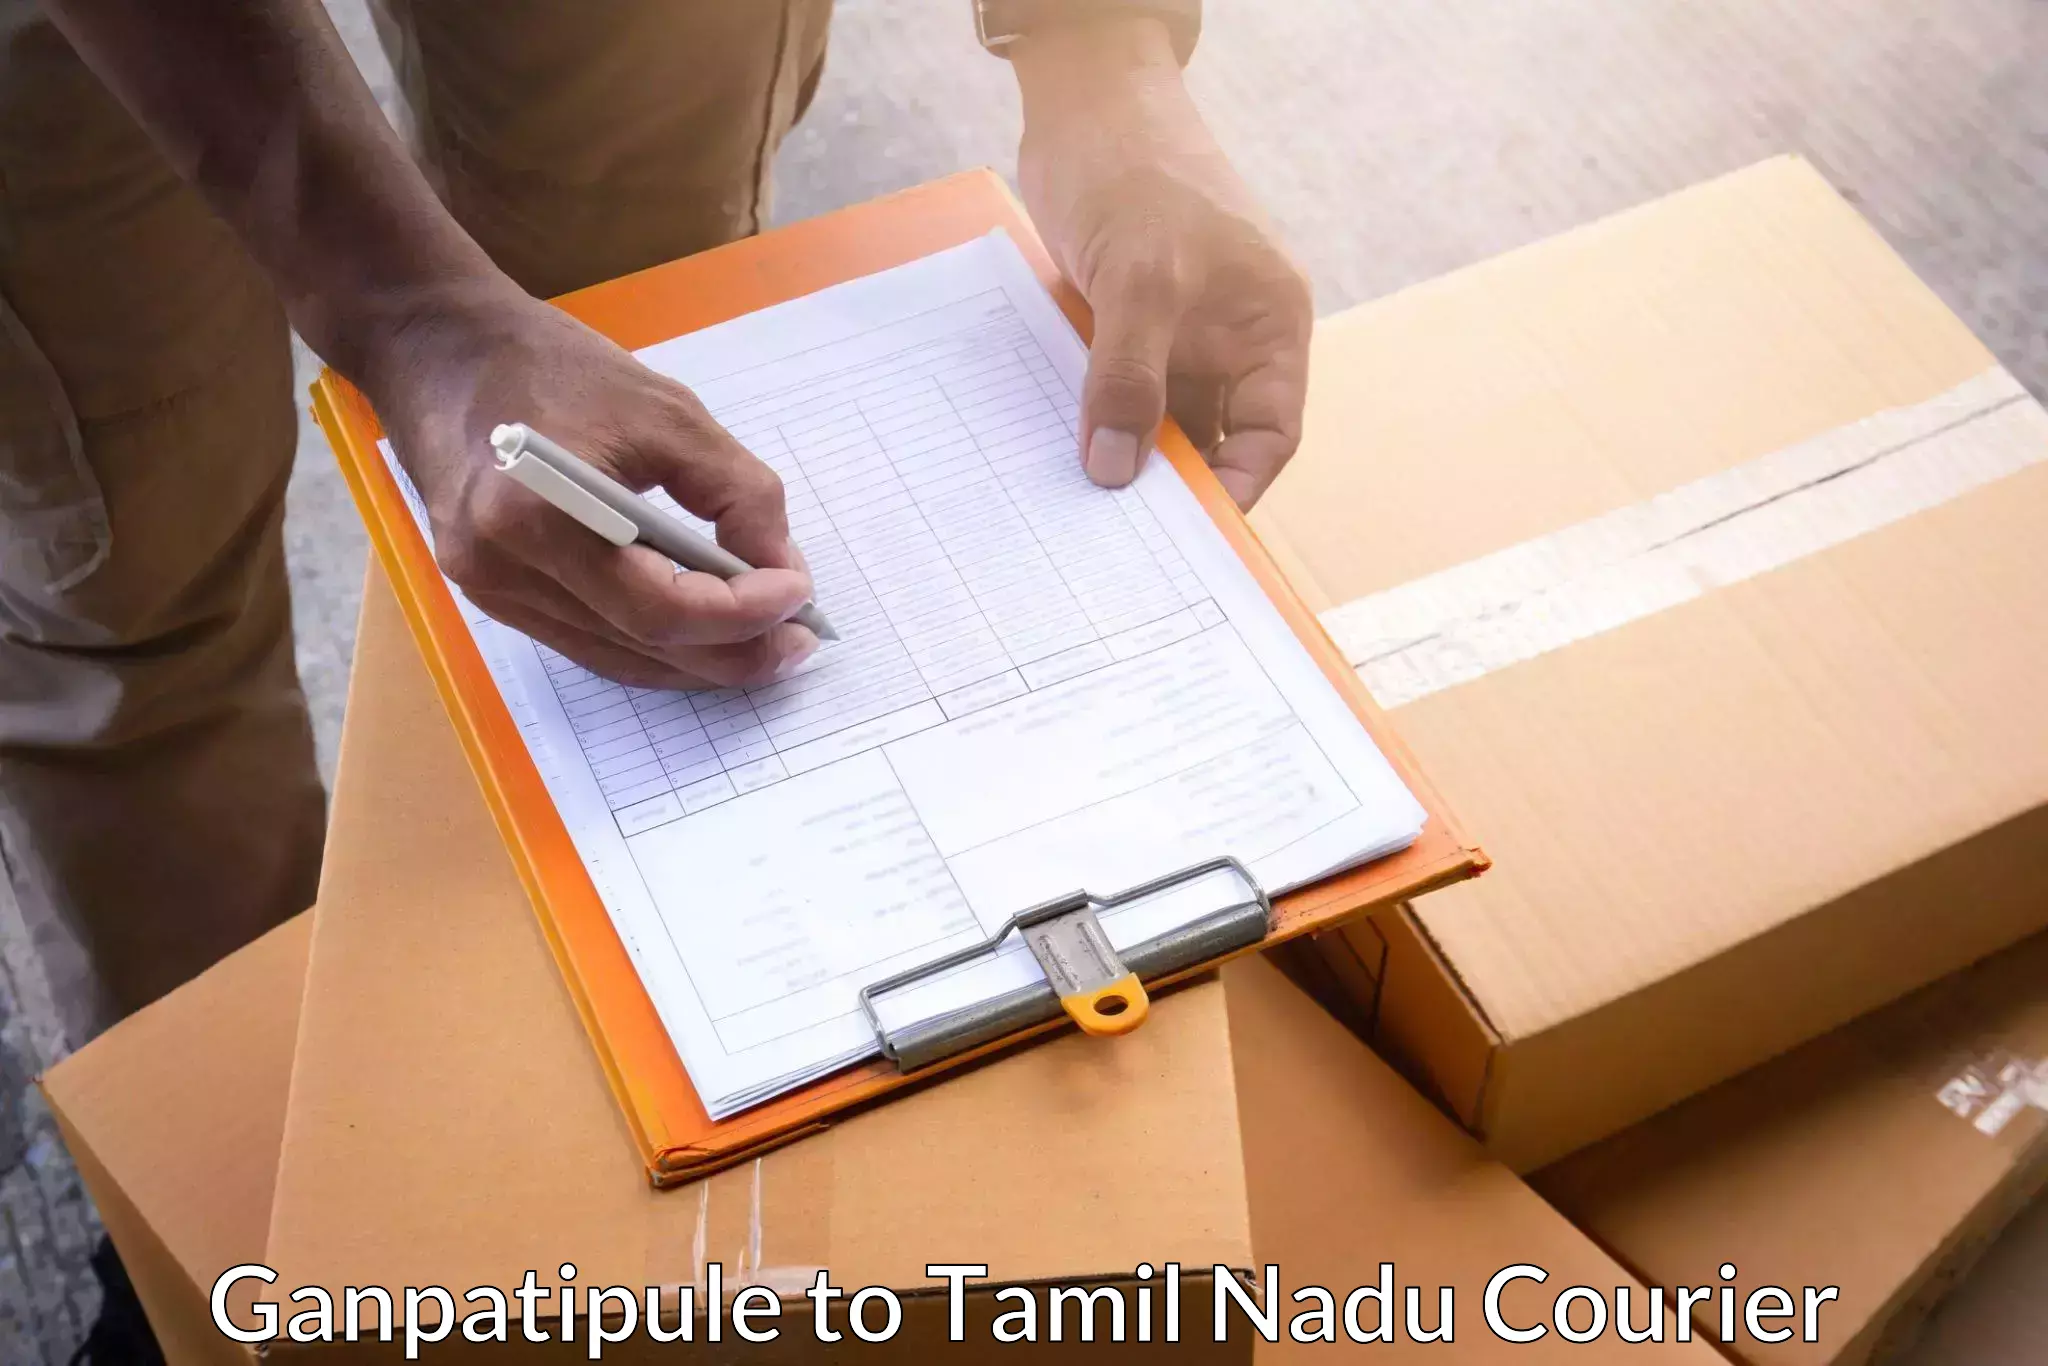 Express package handling in Ganpatipule to Tirunelveli